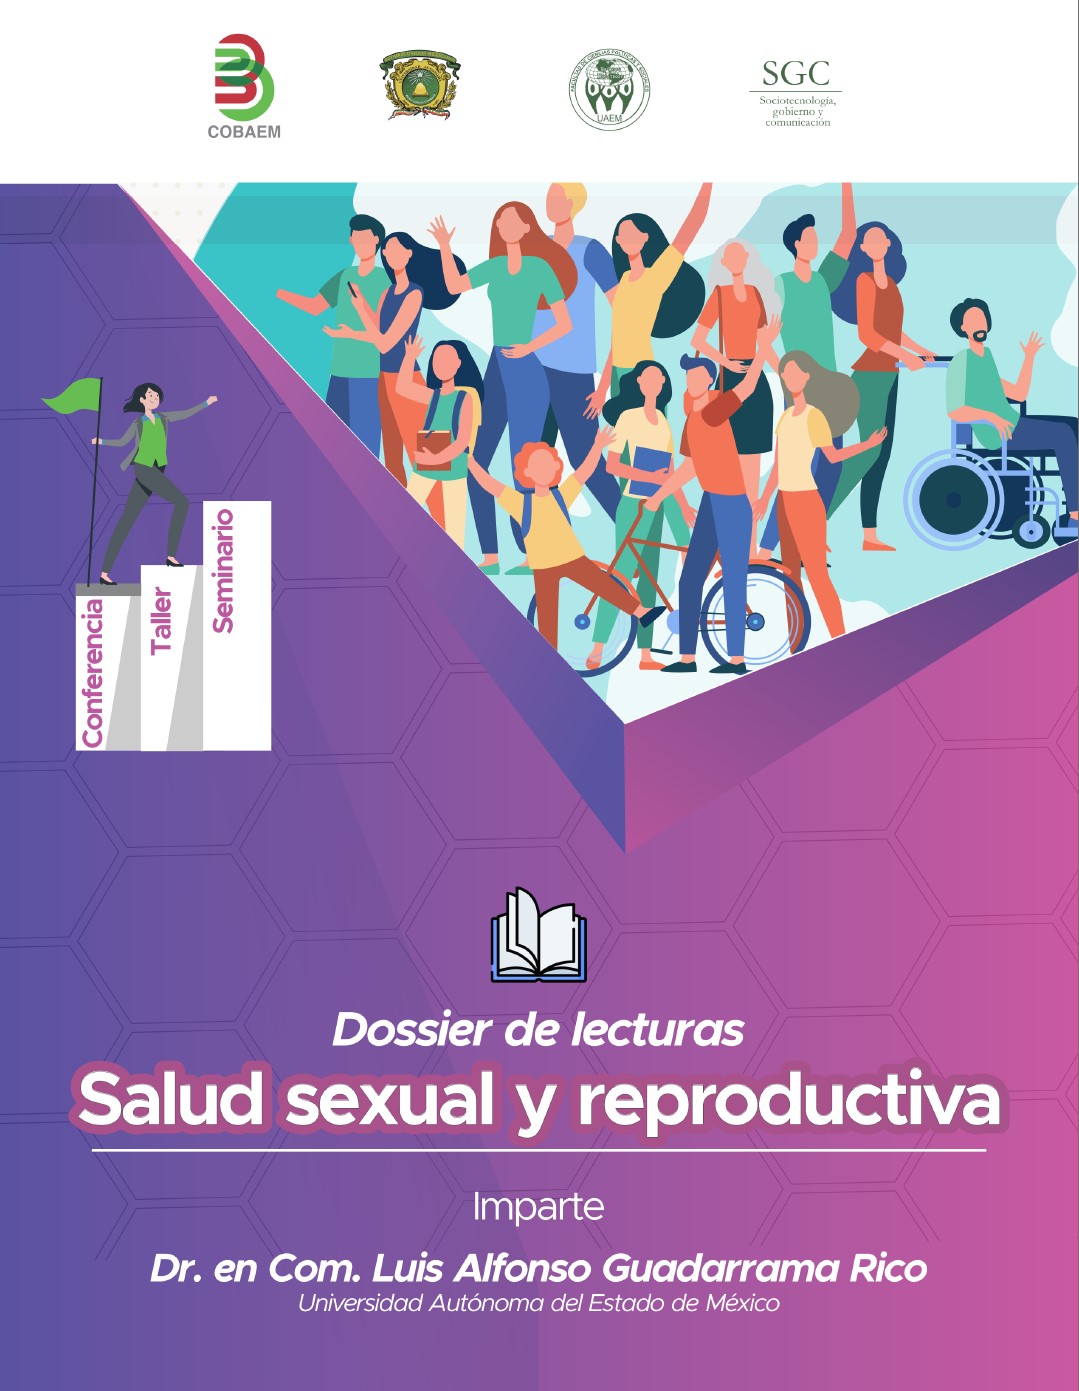 Dossier Taller Salud Sexual Y Reproductiva En Temoaya Cobaem 60 Luis Alfonso Guadarrama Rico 6235